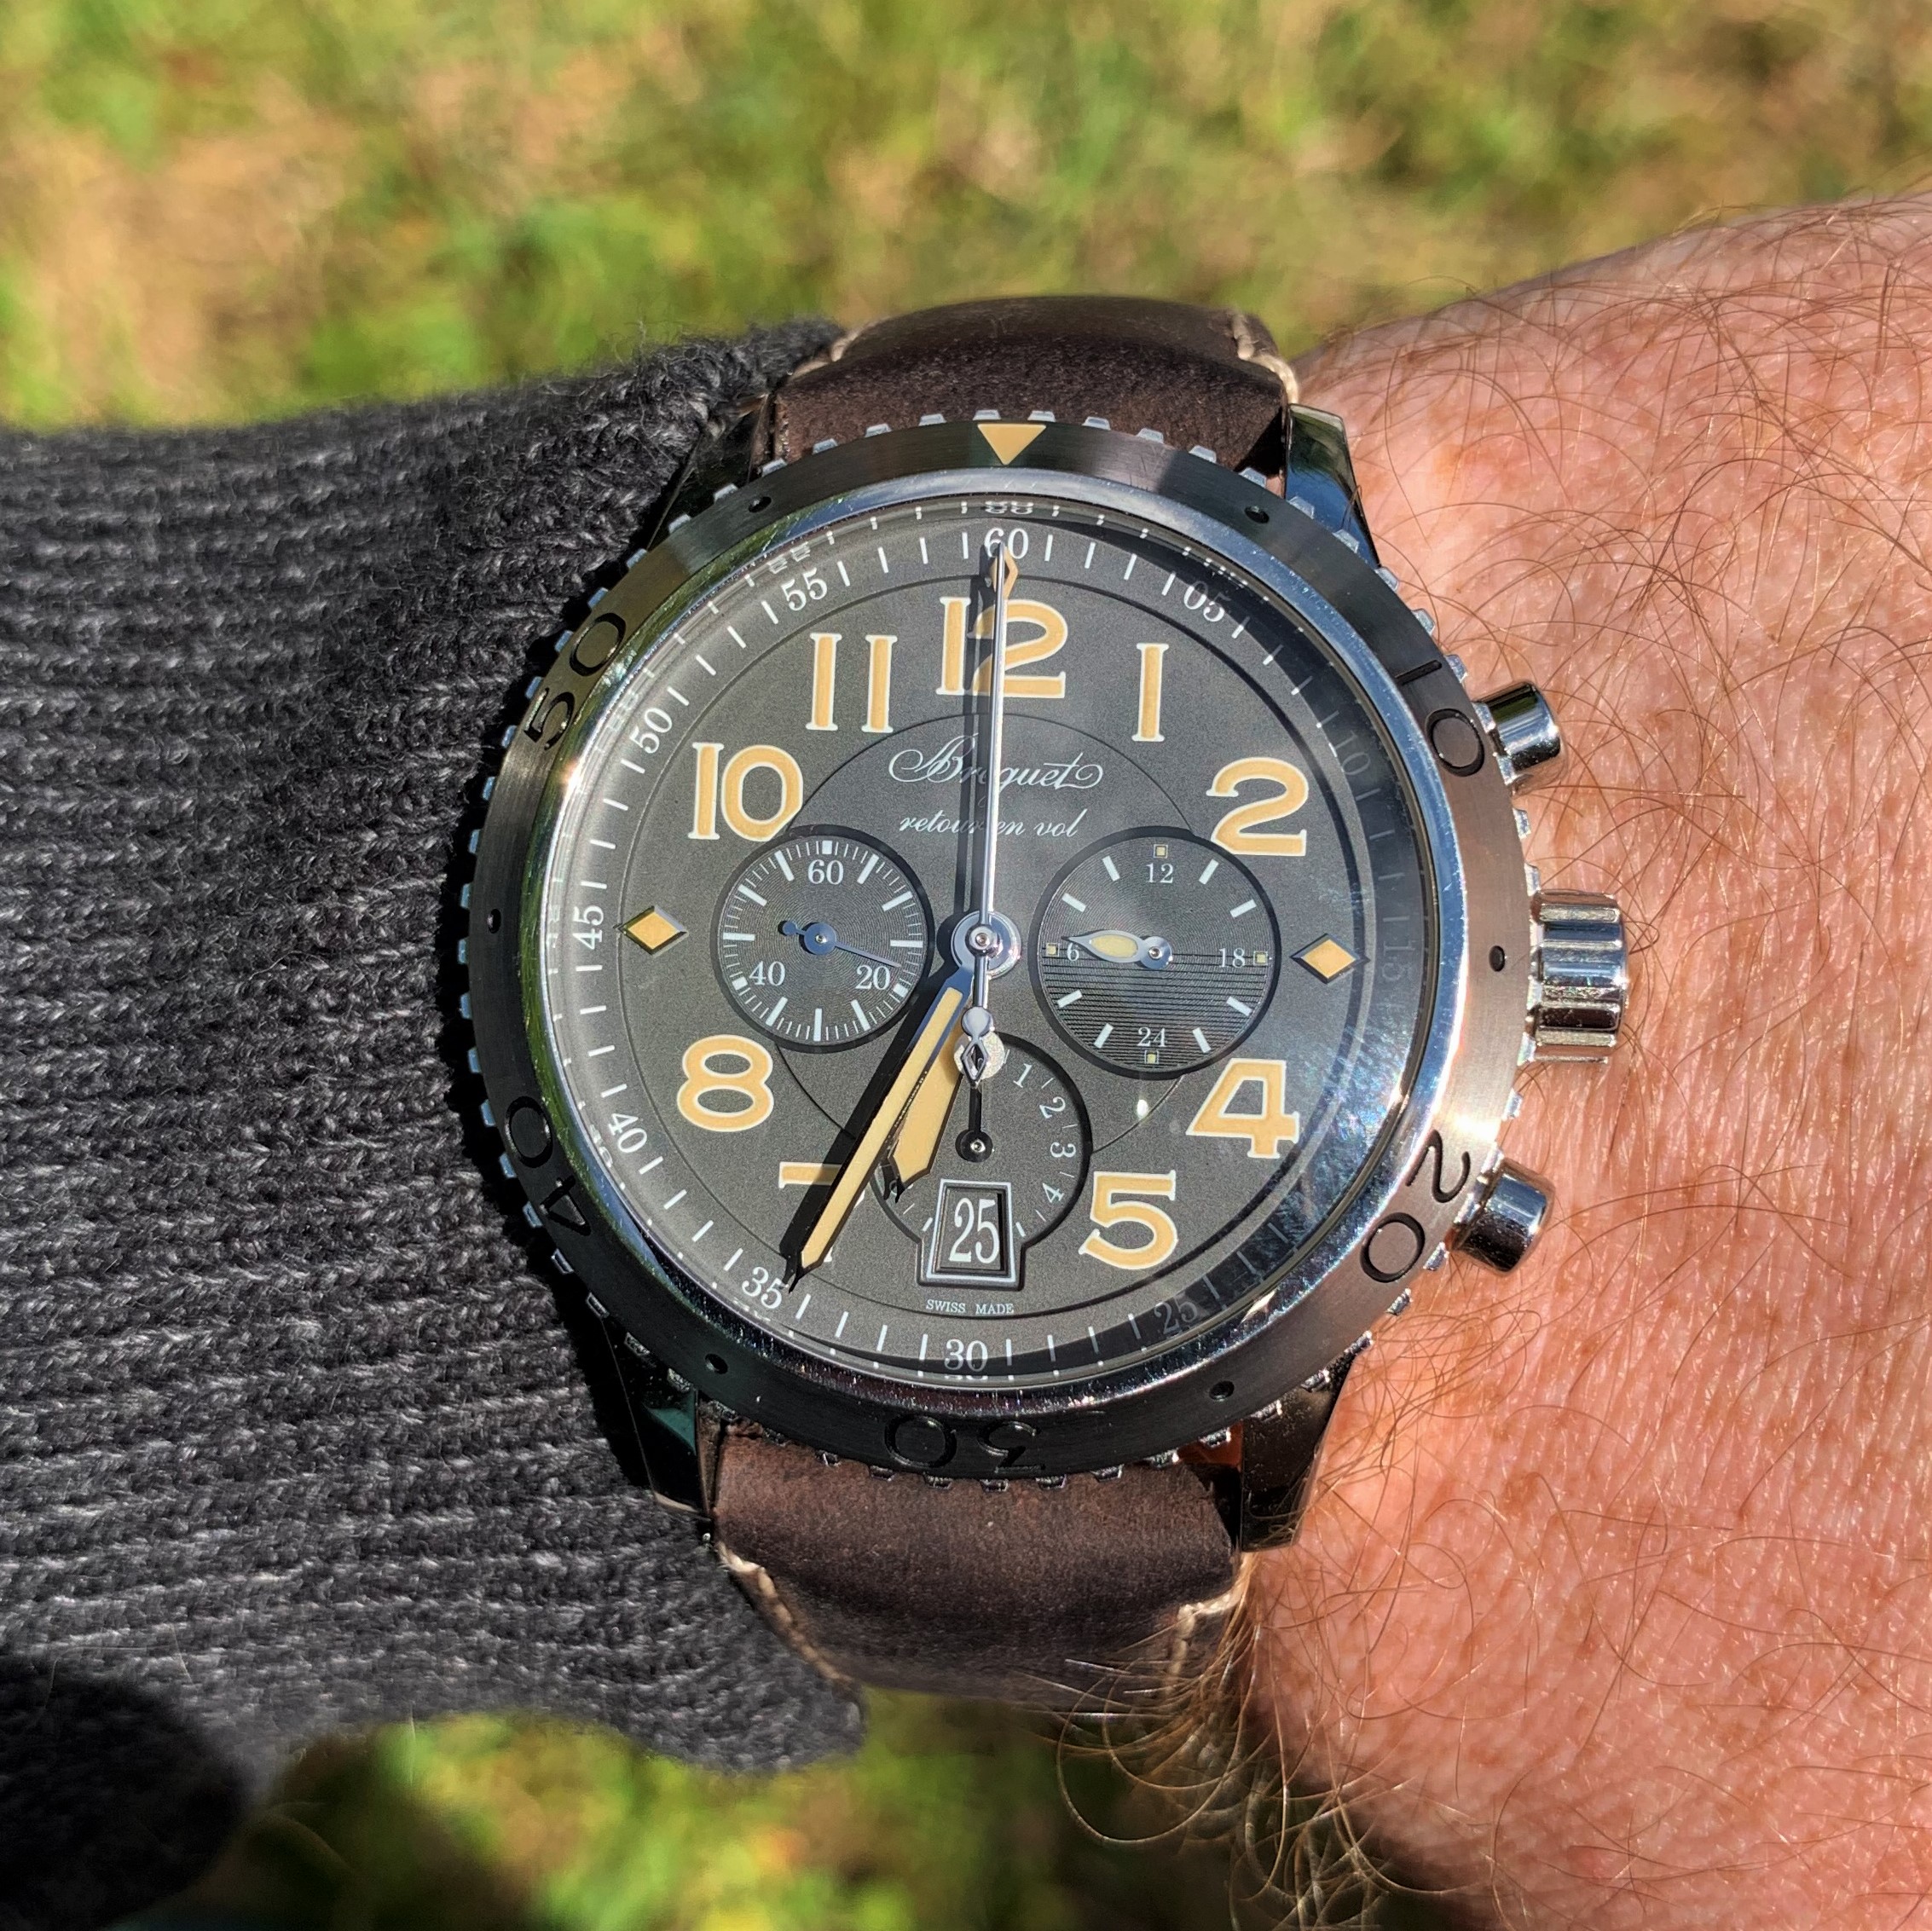 Breguet 3817 pilot's watch